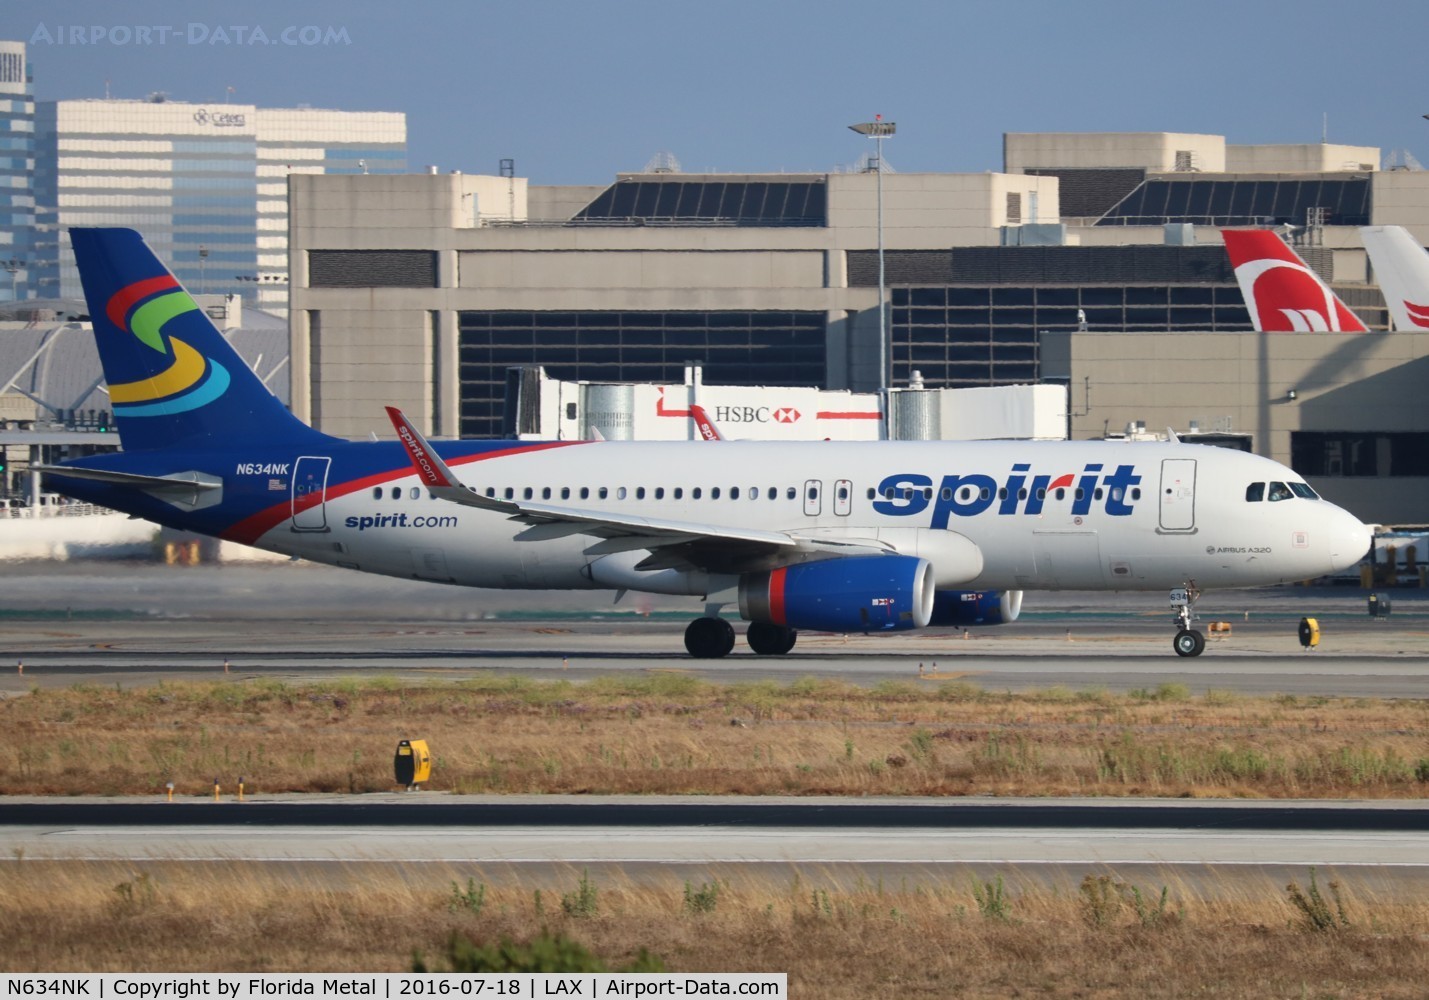 N634NK, 2014 Airbus A320-232 C/N 6370, Spirit